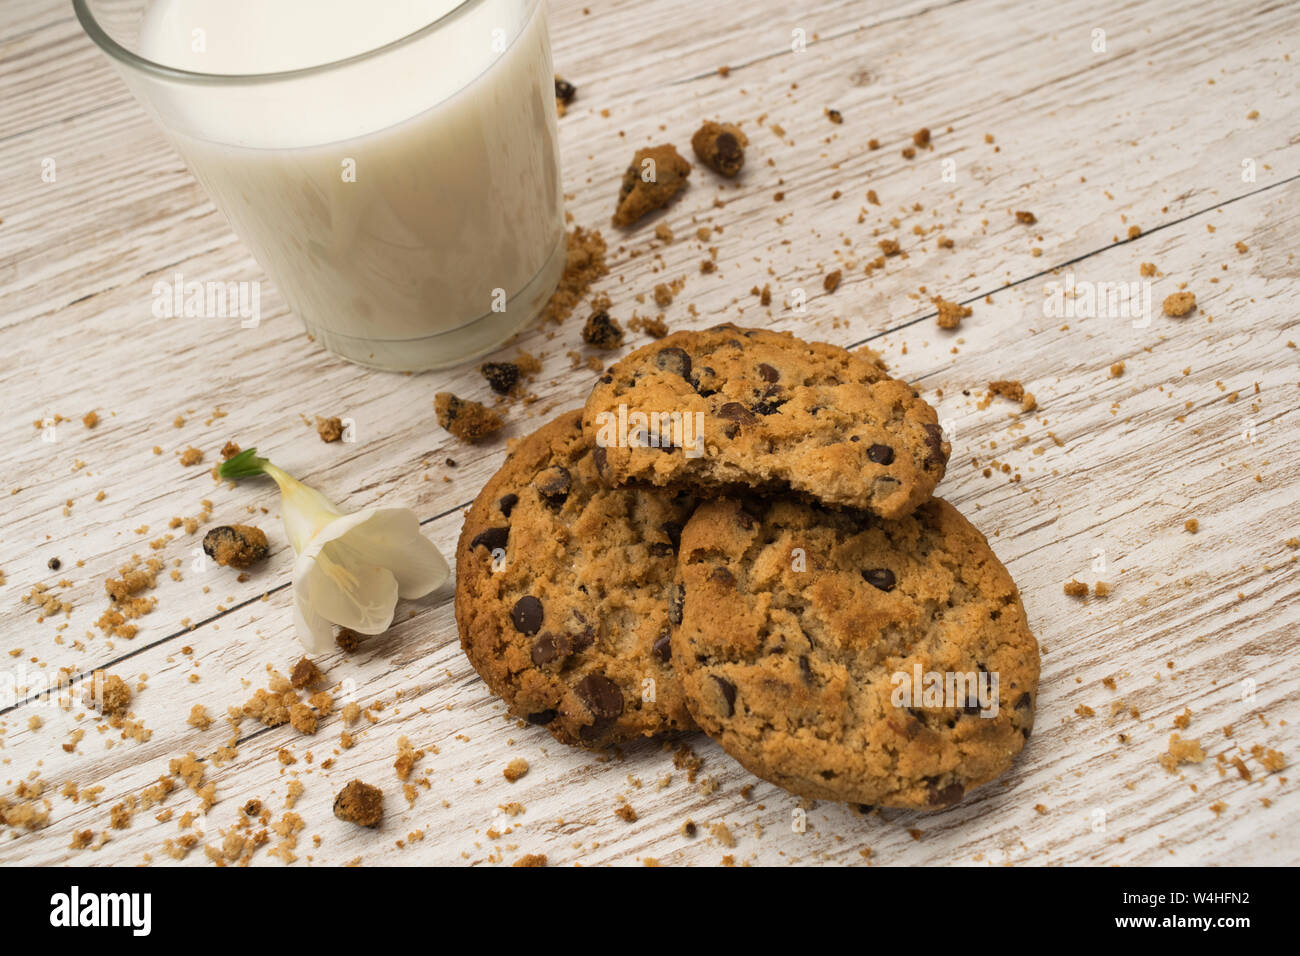 Vue de dessus de cookies aux pépites de chocolat, miettes et un verre de lait sur une table en bois Banque D'Images